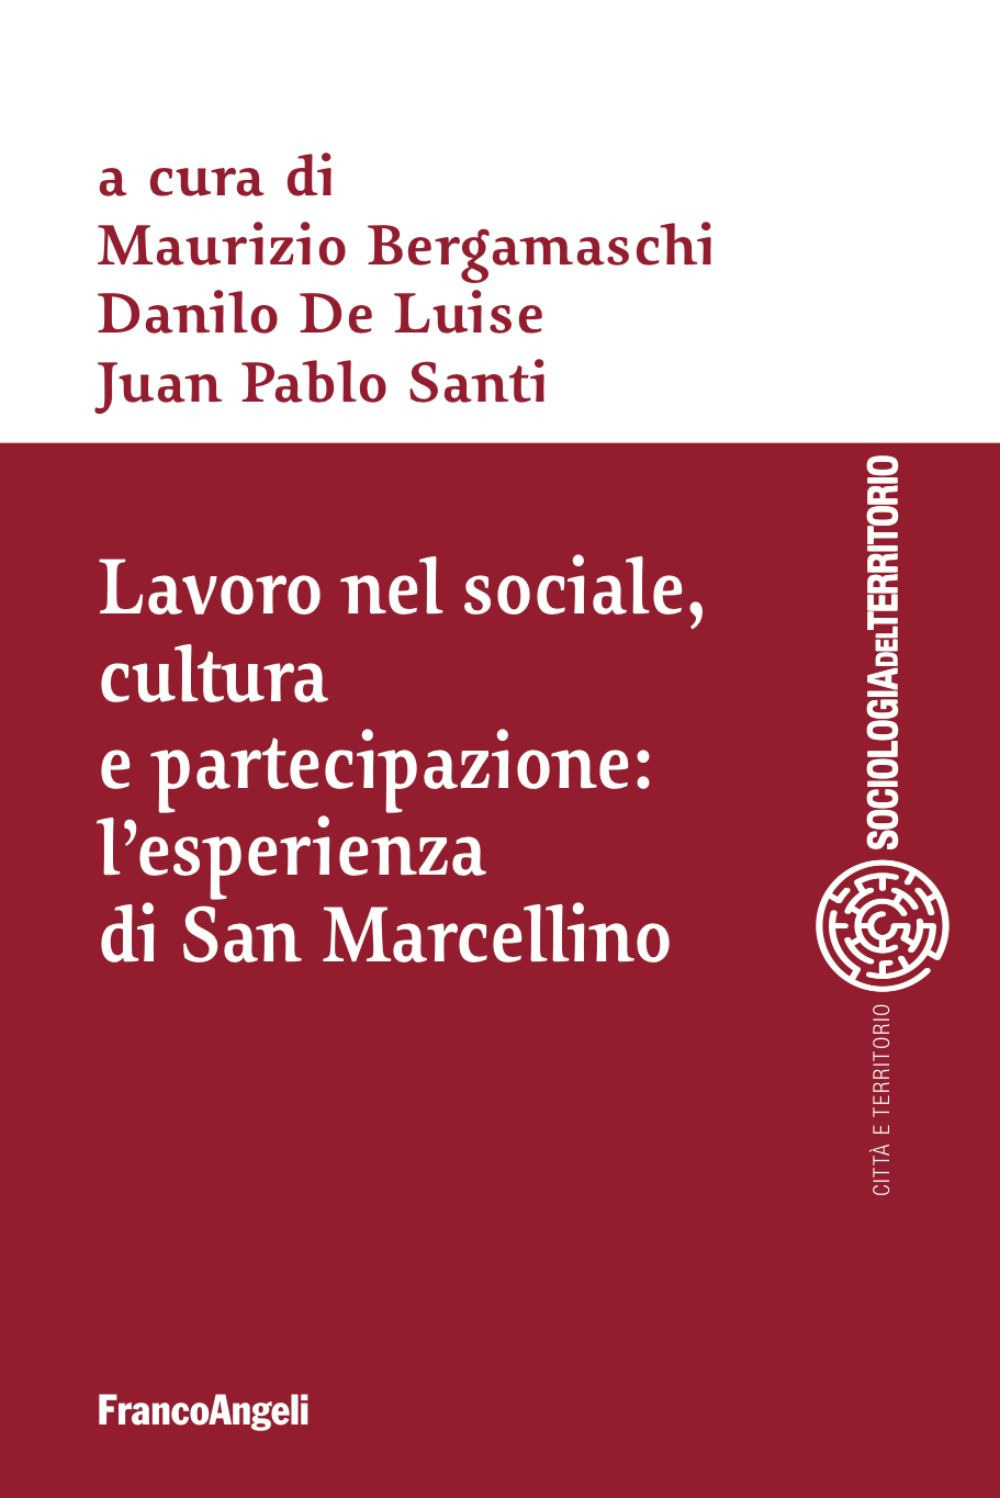 Image of Lavoro nel sociale, cultura e partecipazione: l'esperienza di San Marcellino